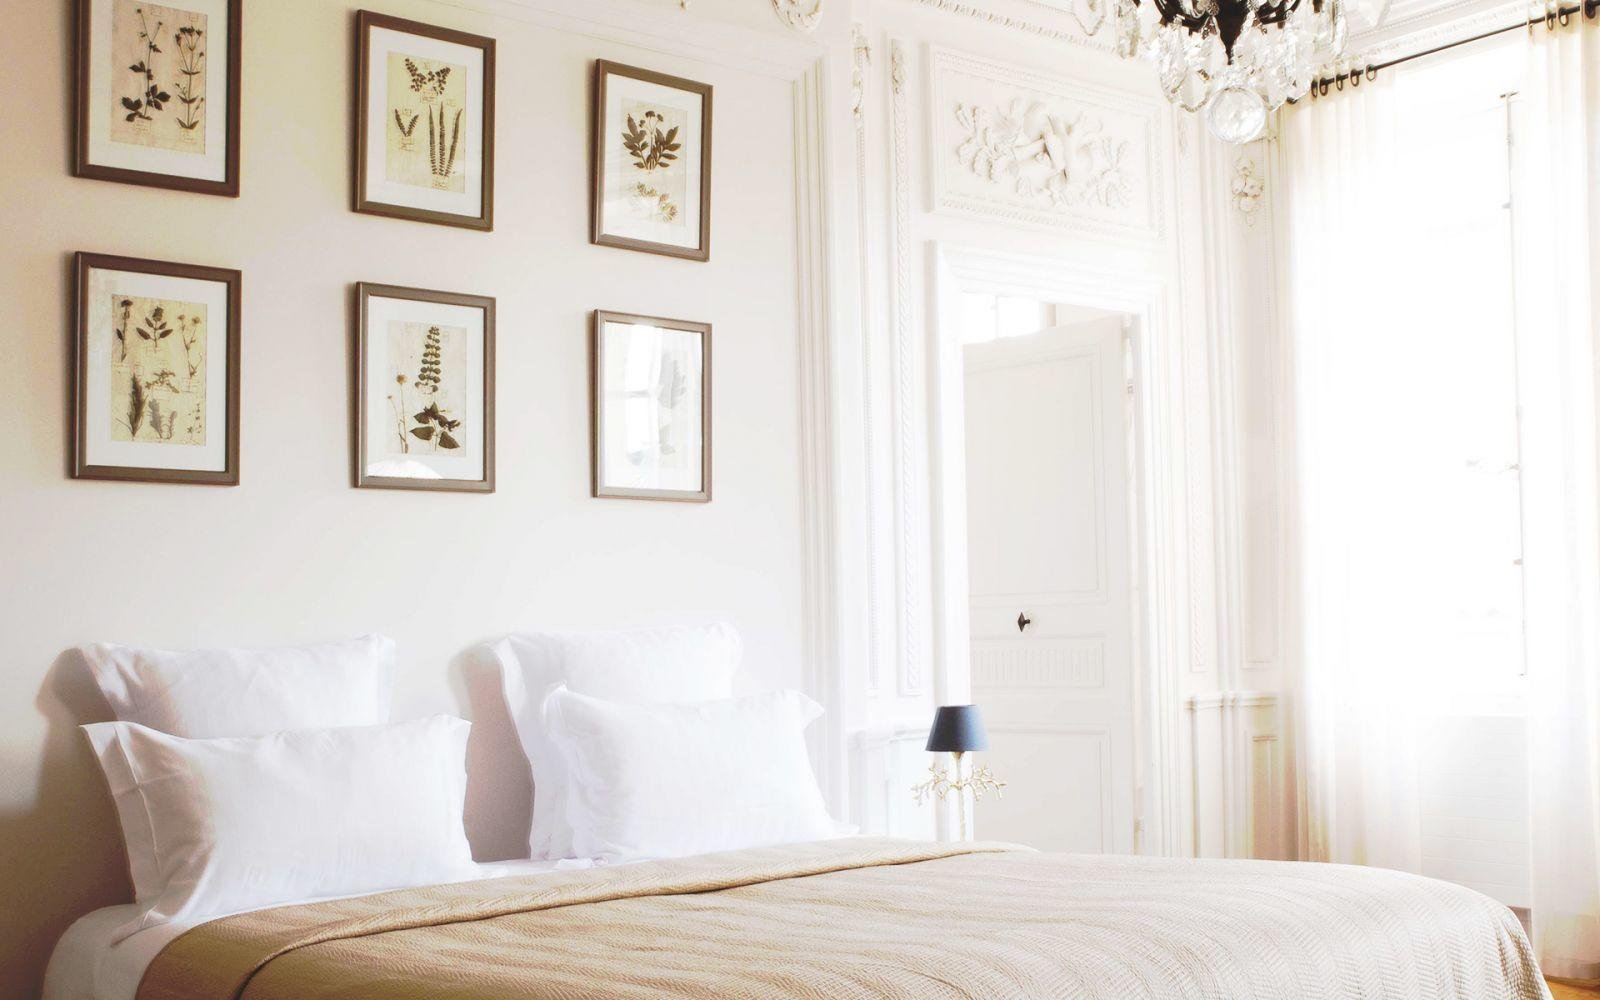 Hôtel de la Villeon | La Villeon suite | bed